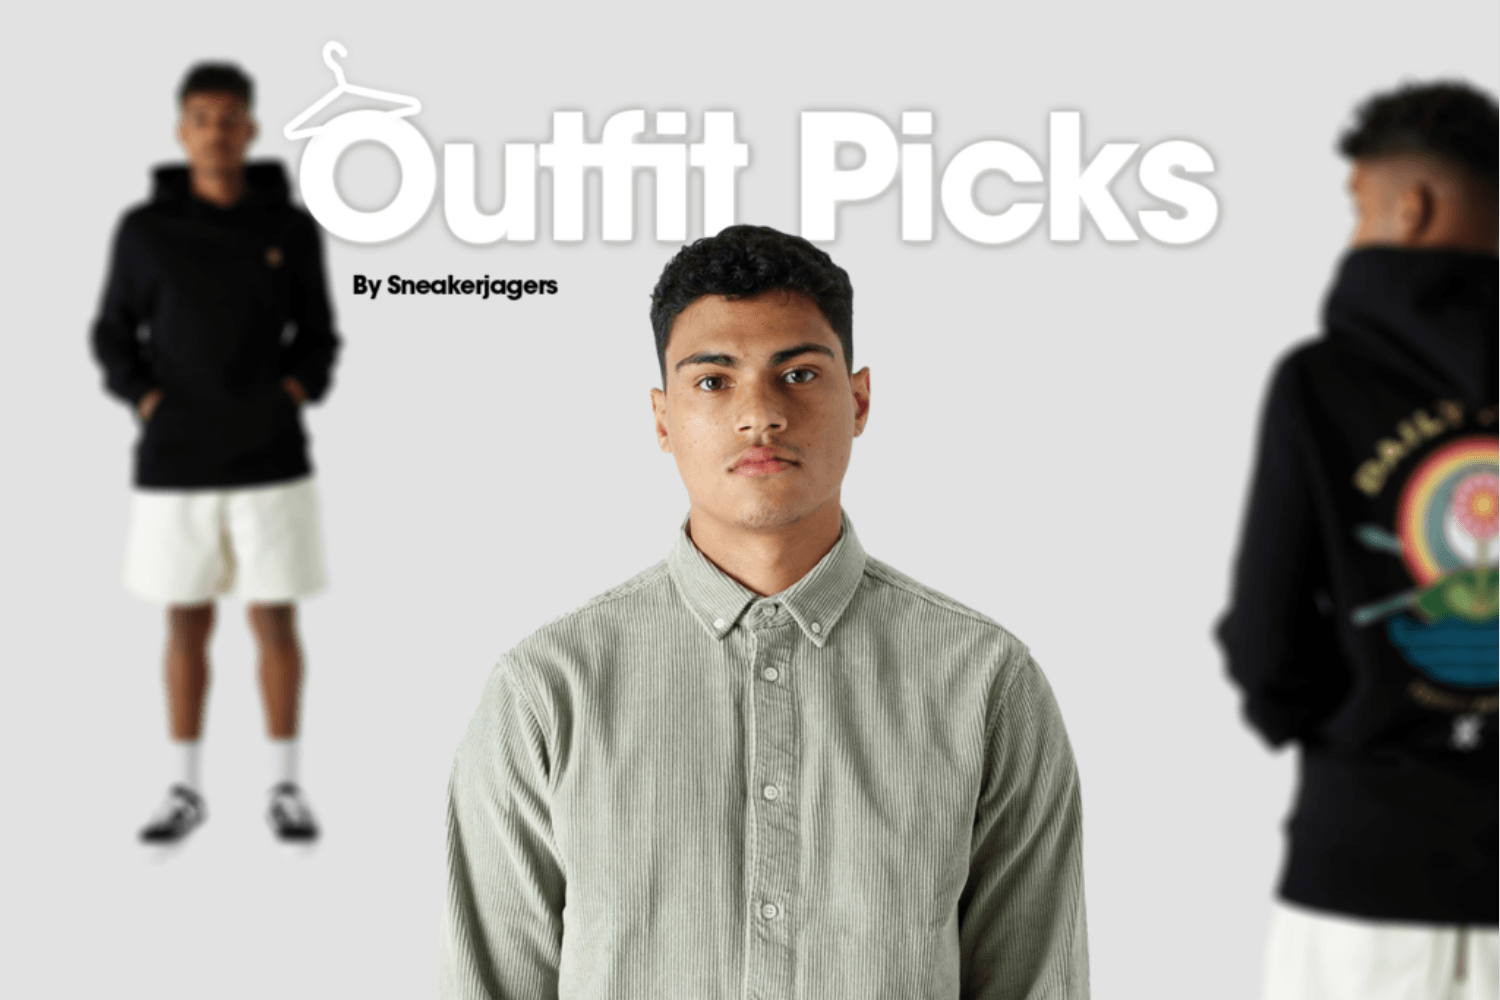 Outfit Picks by Sneakerjagers - week 16